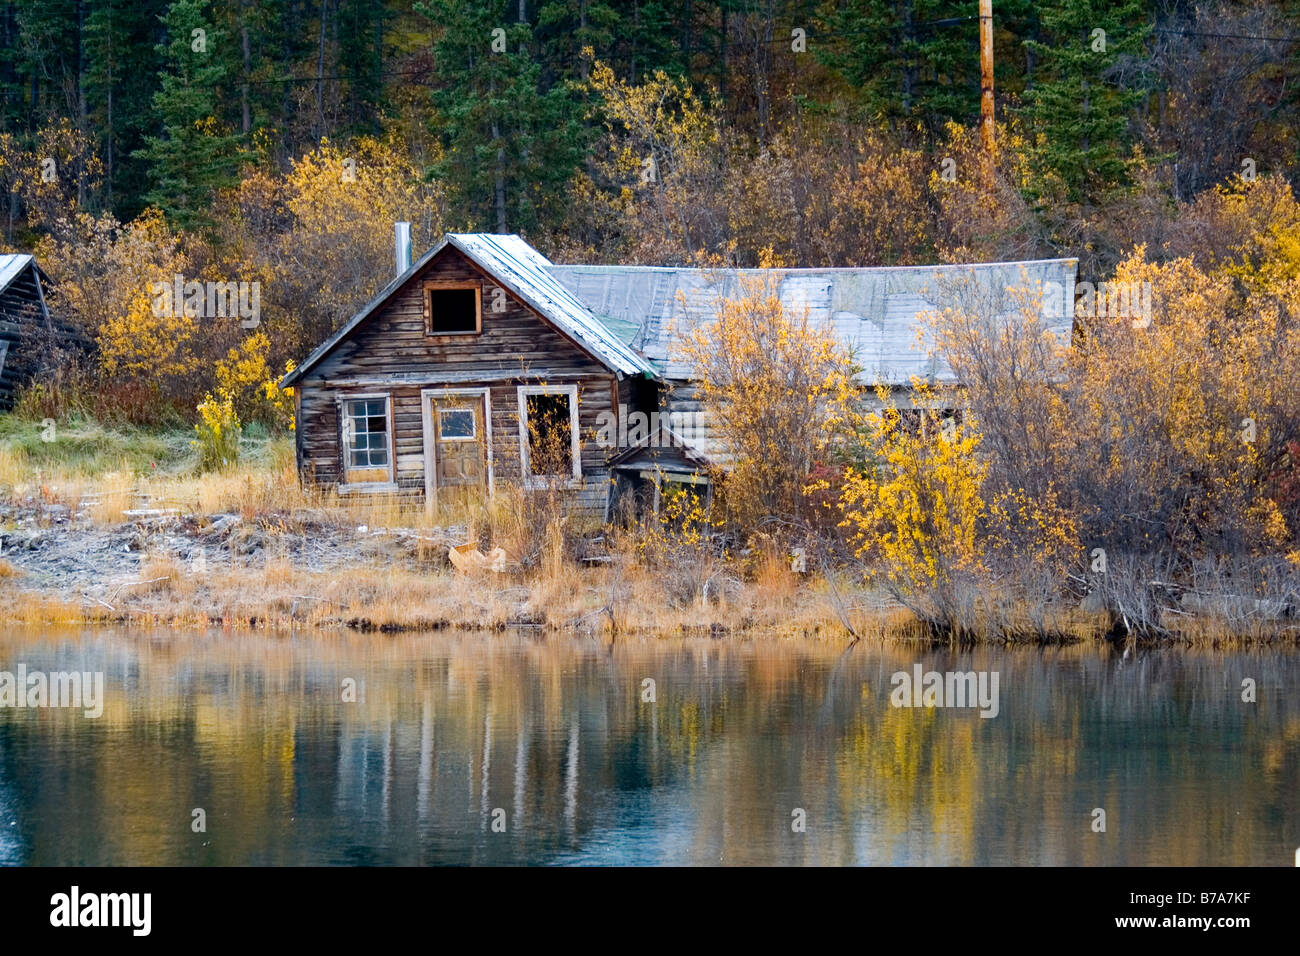 Log cabin historique, l'or du Klondike, Nares Lake, Lake Benett, couleurs d'automne, Carcross, Yukon Territory, Canada, Amérique du Nord Banque D'Images